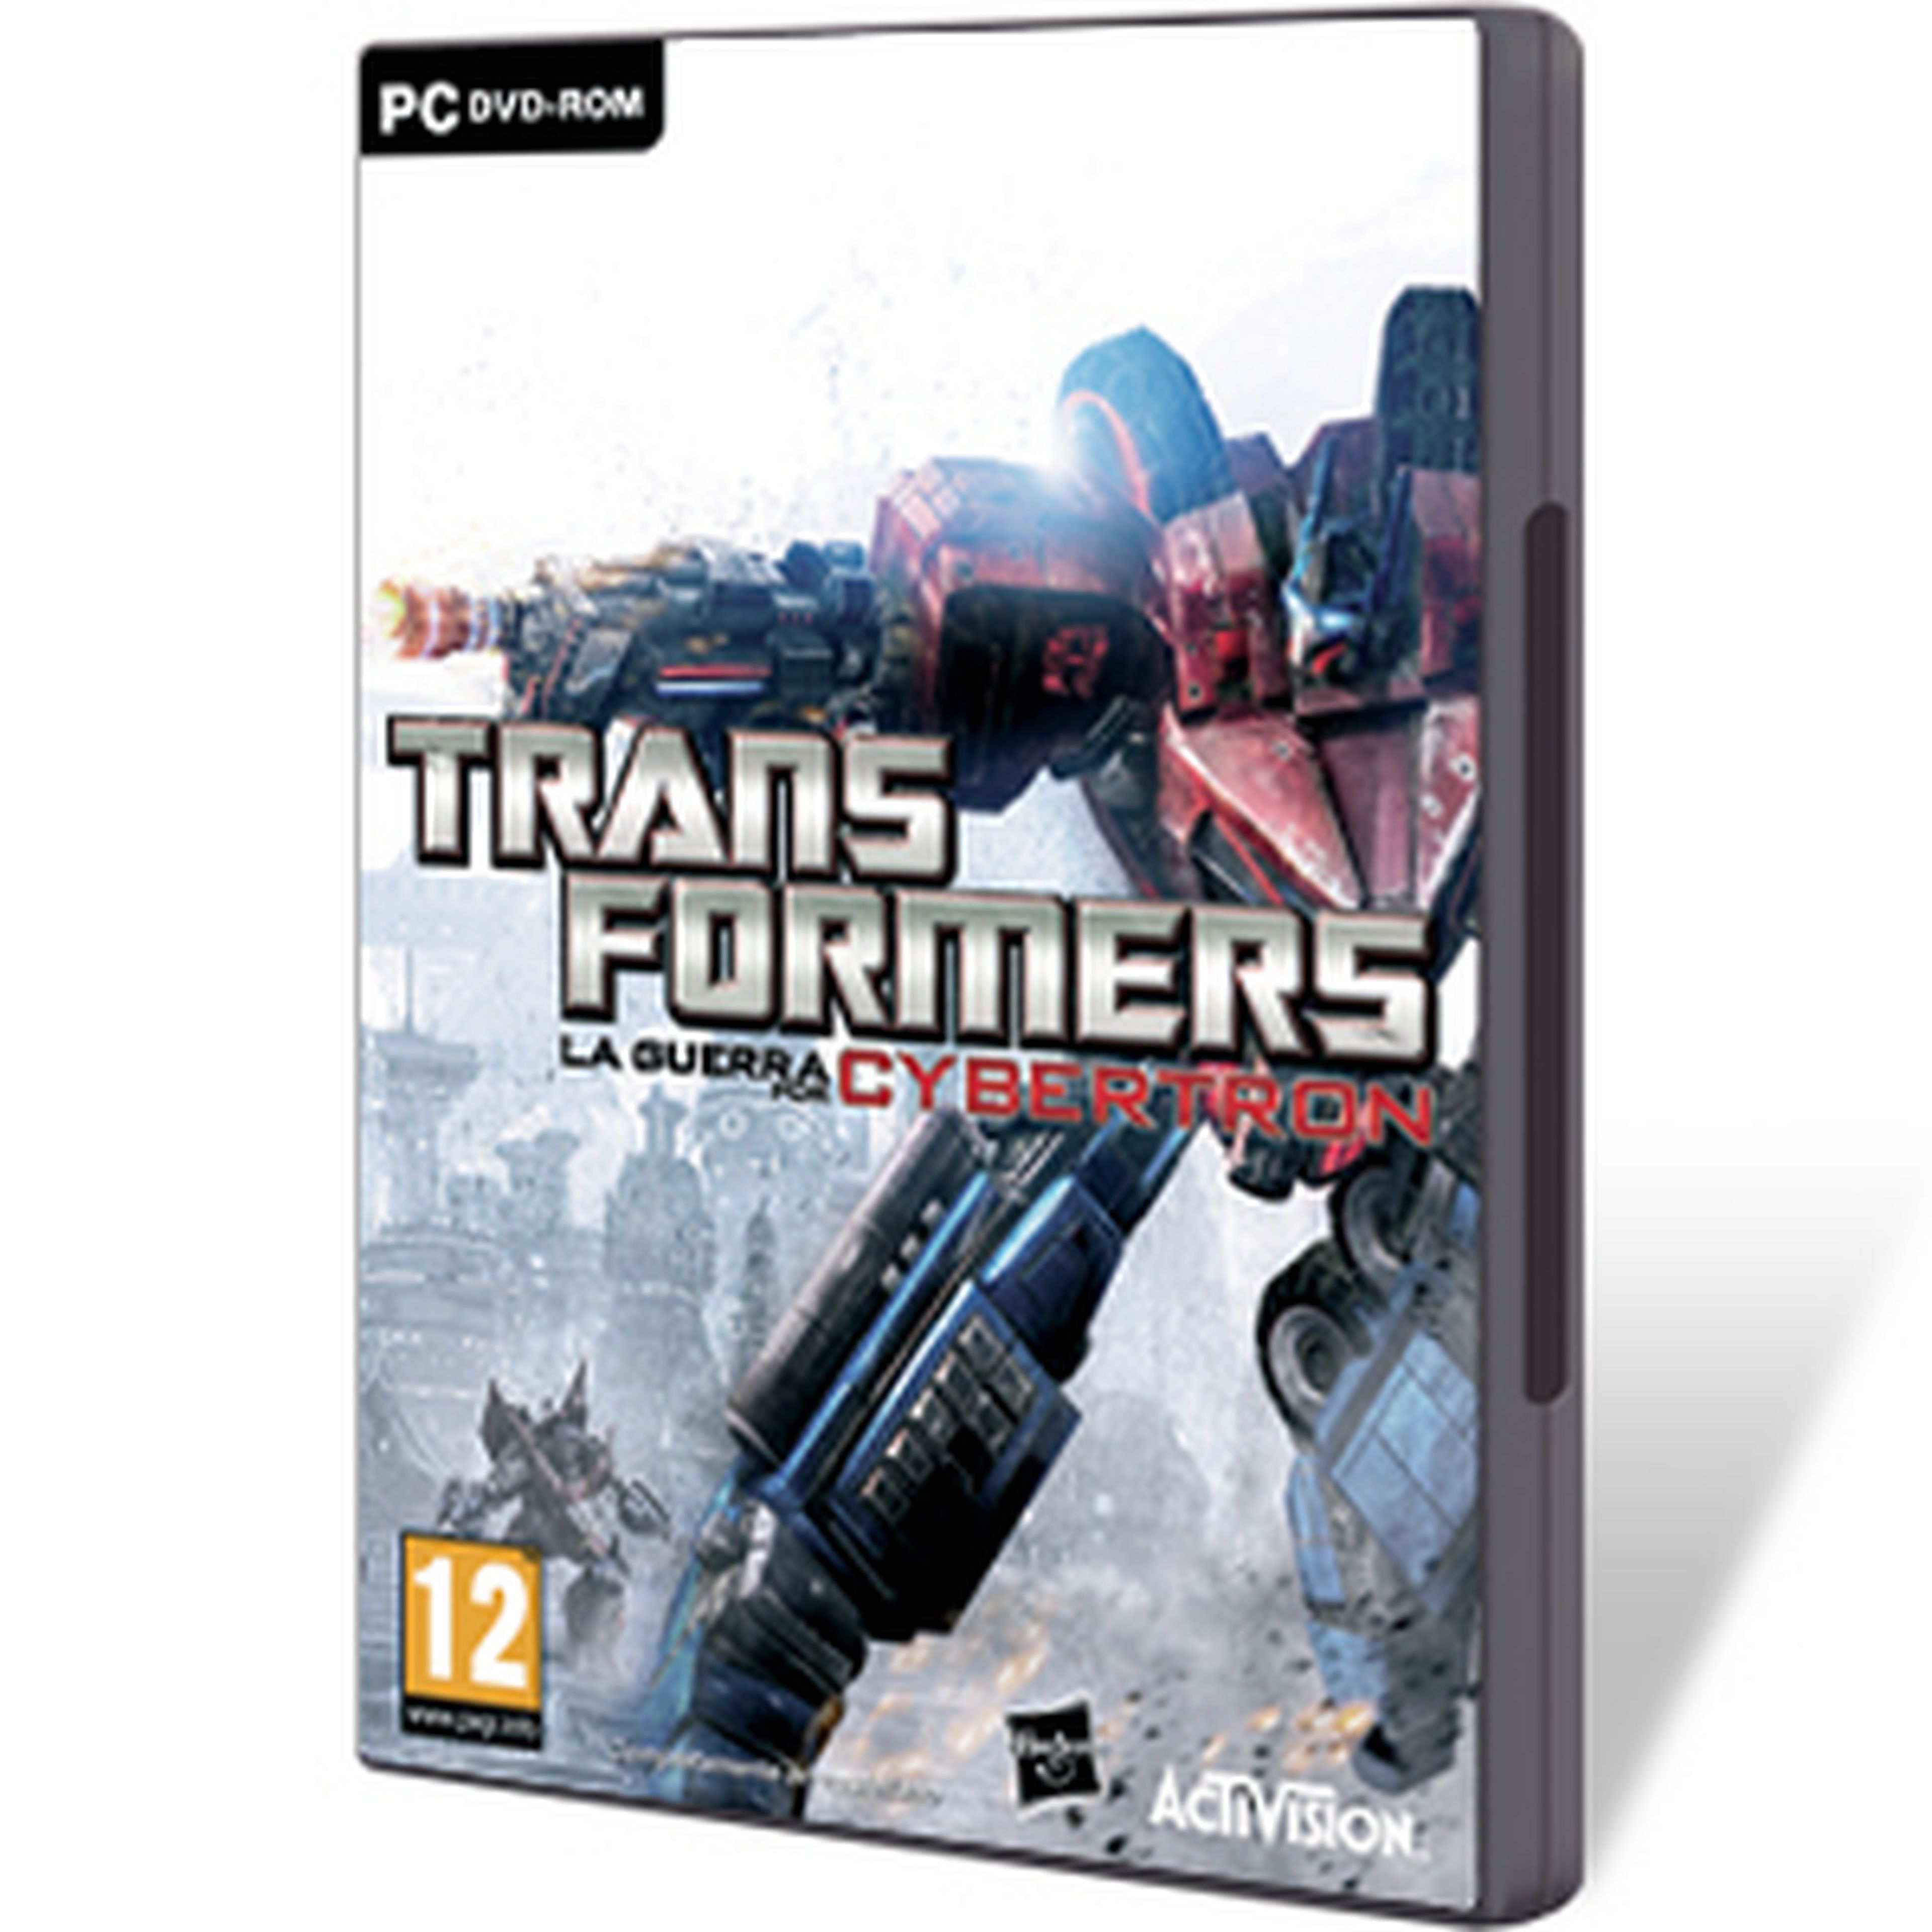 Transformers Guerra por Cybertron para PC